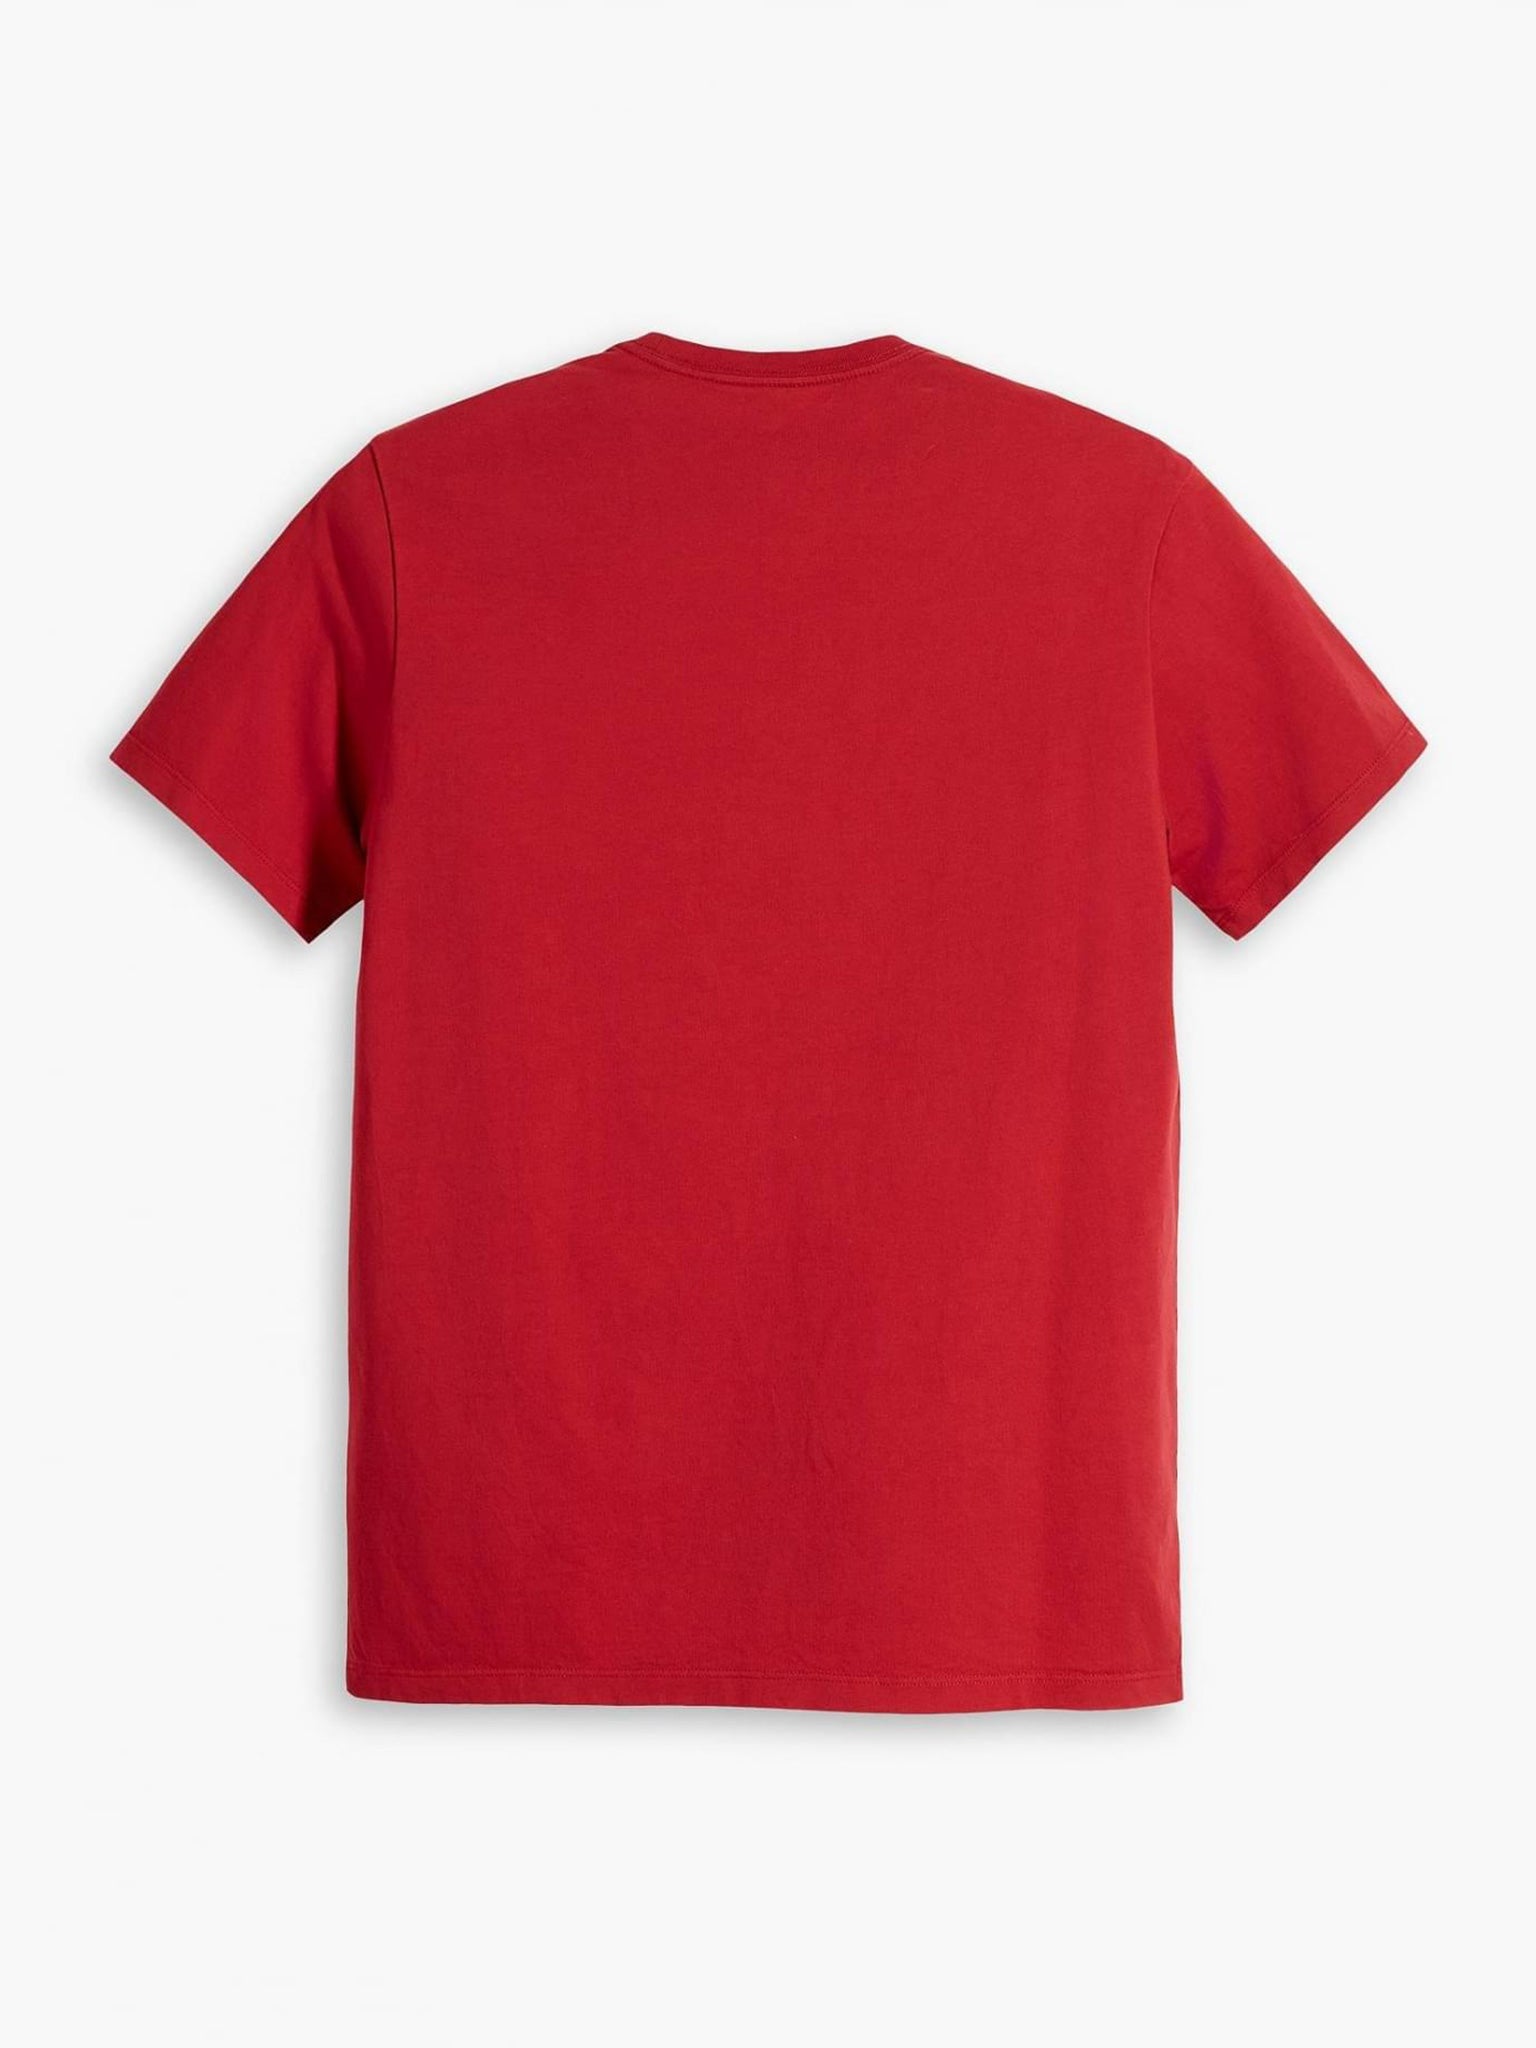 Ανδρικό t-shirt Original Housemark Tee 566050176 | 566050176